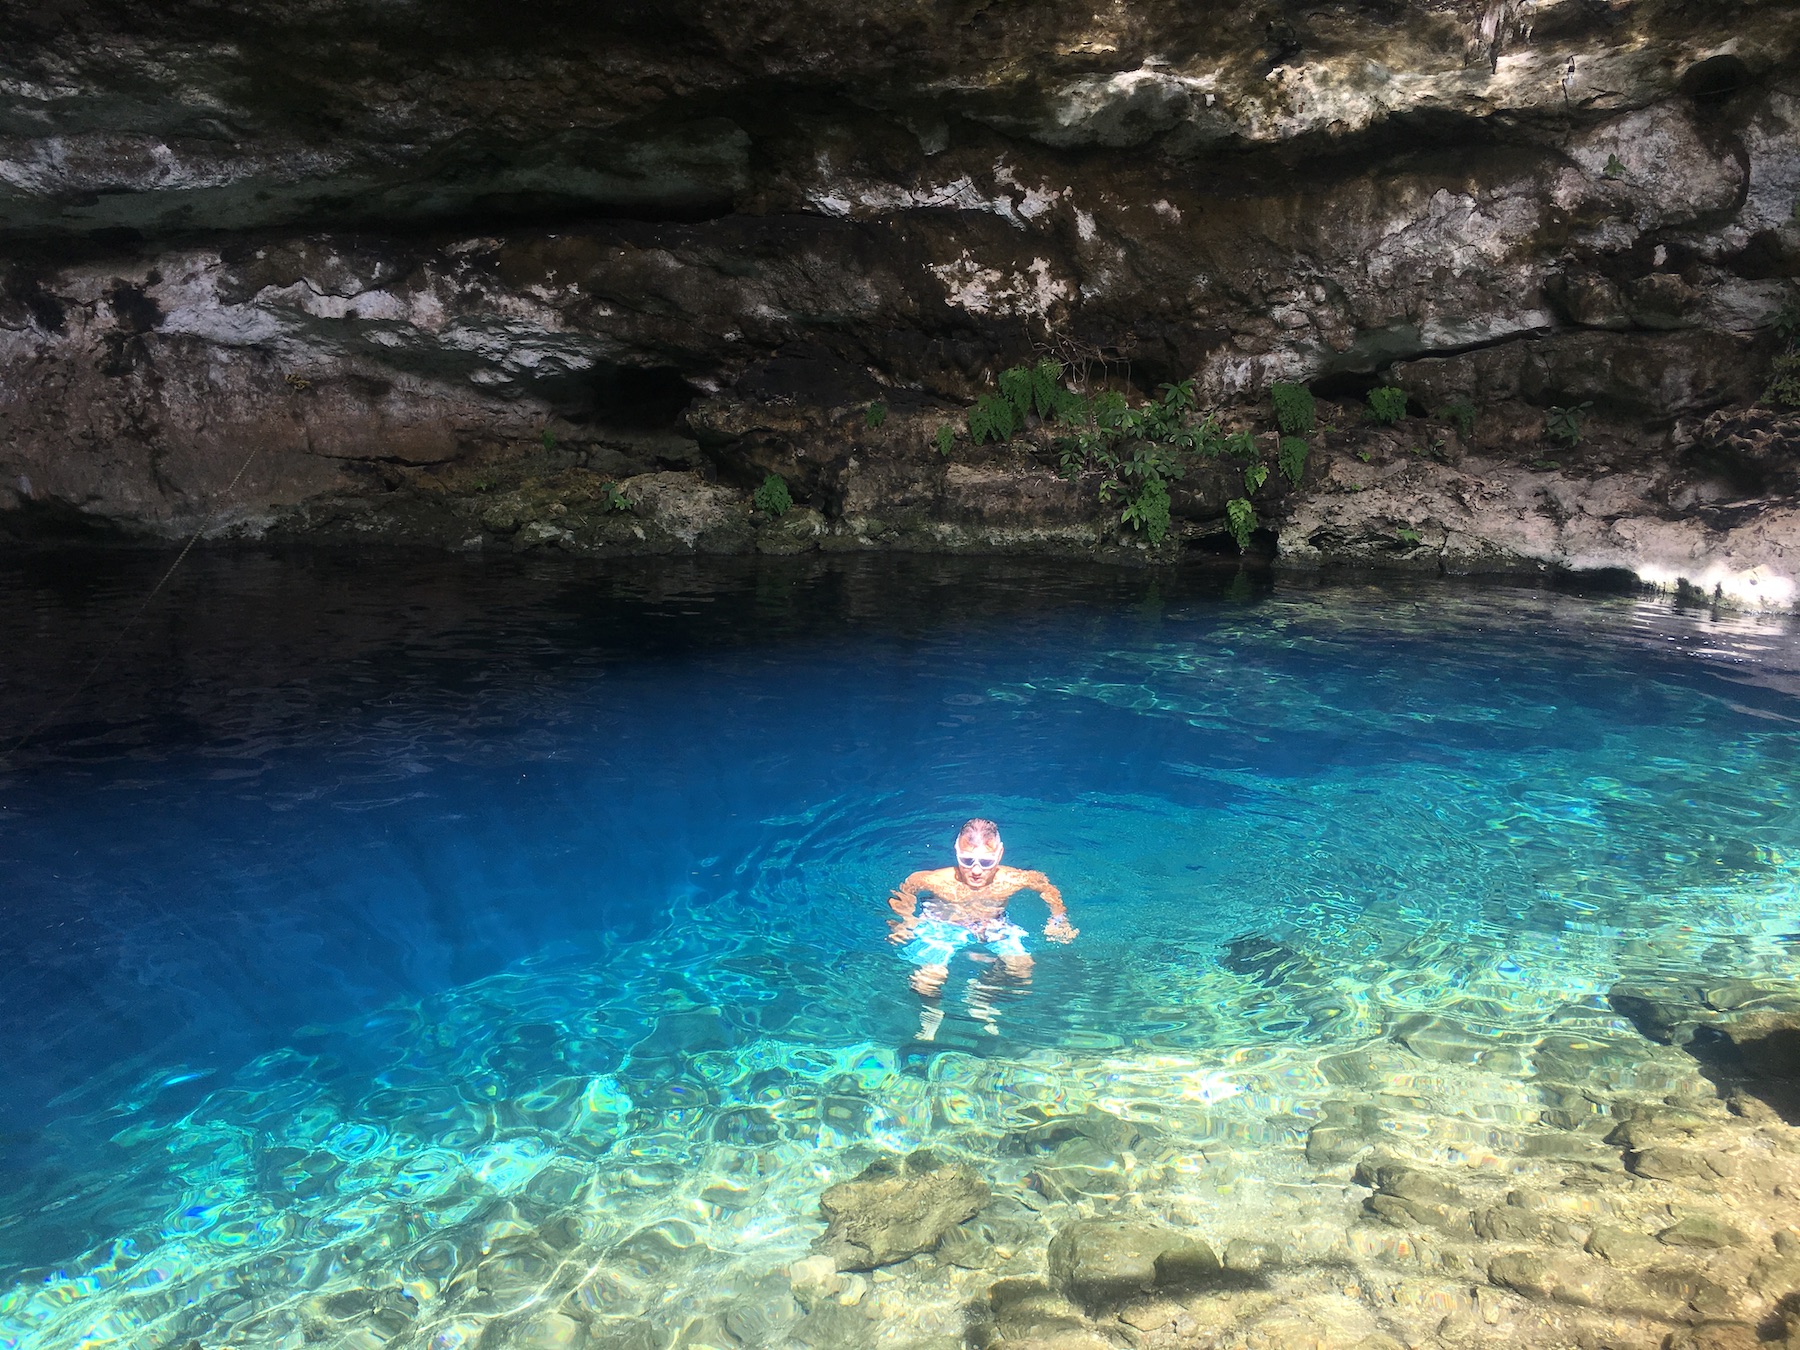 JP having a blast in Cenote Yaxbacaltun, Homun